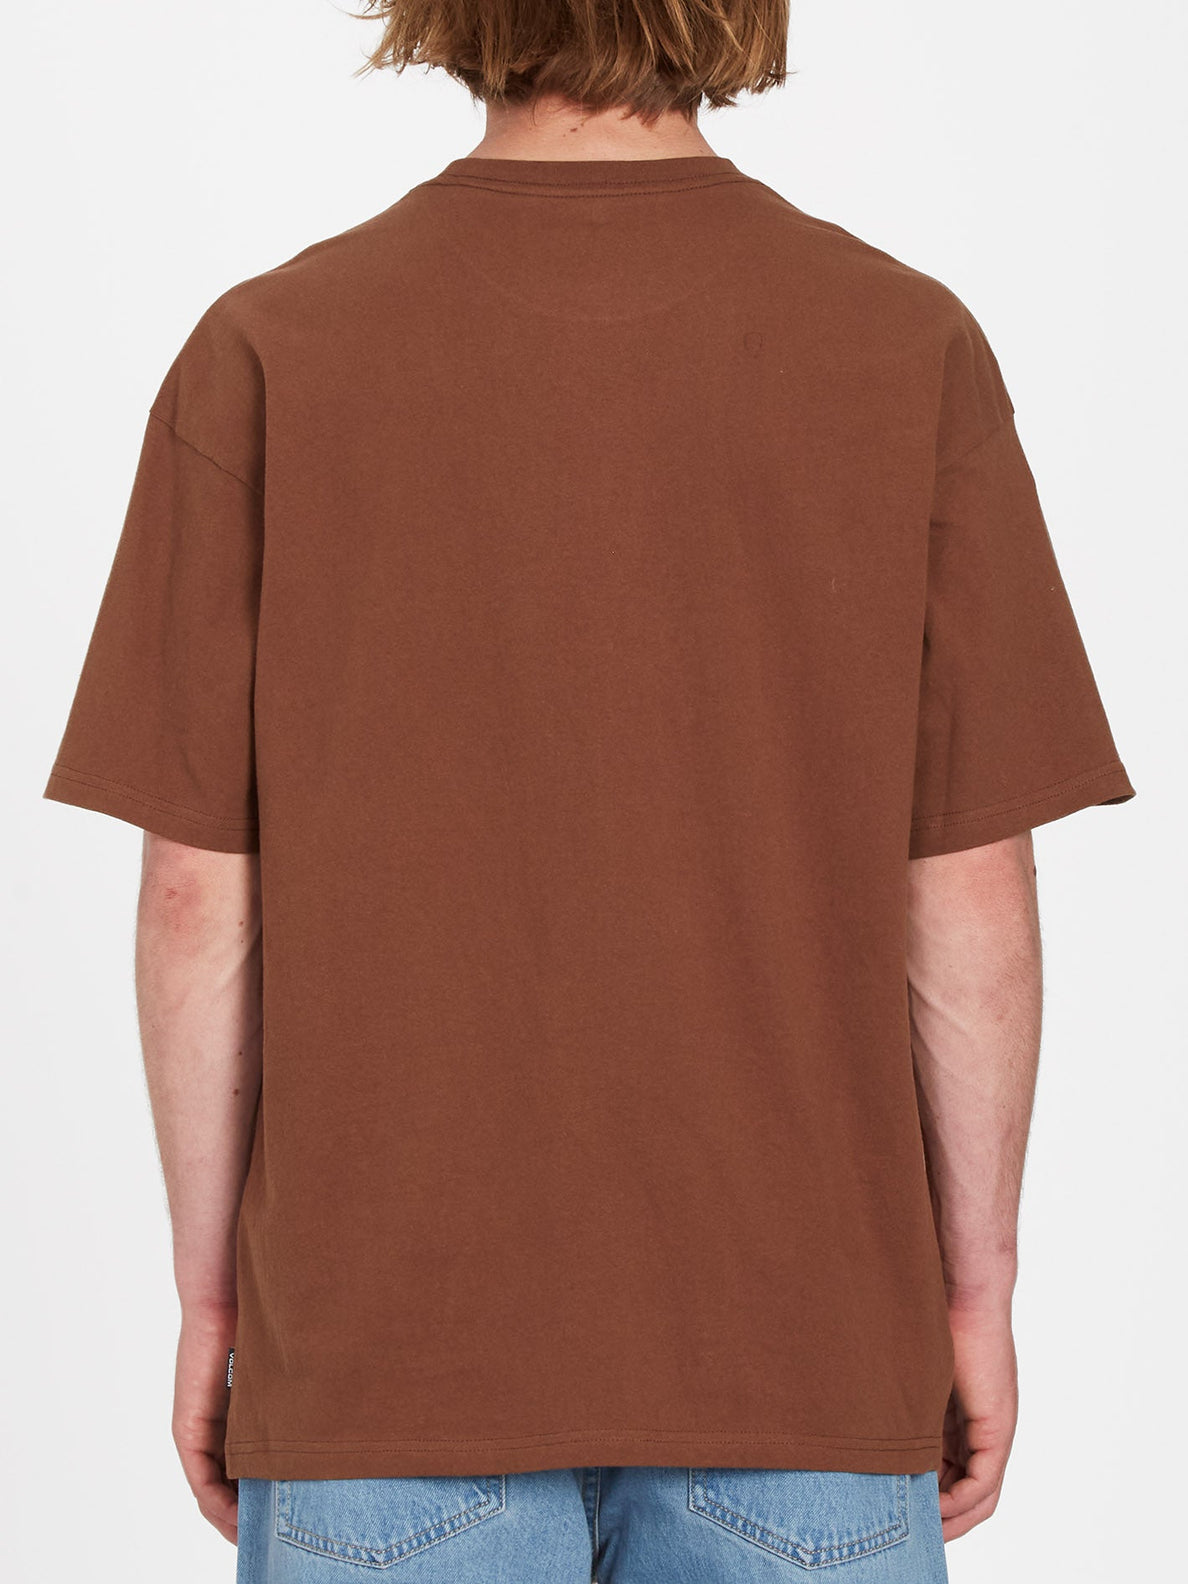 Todd Bratrud 2 T-shirt - BURRO BROWN (A5212307_BRR) [B]